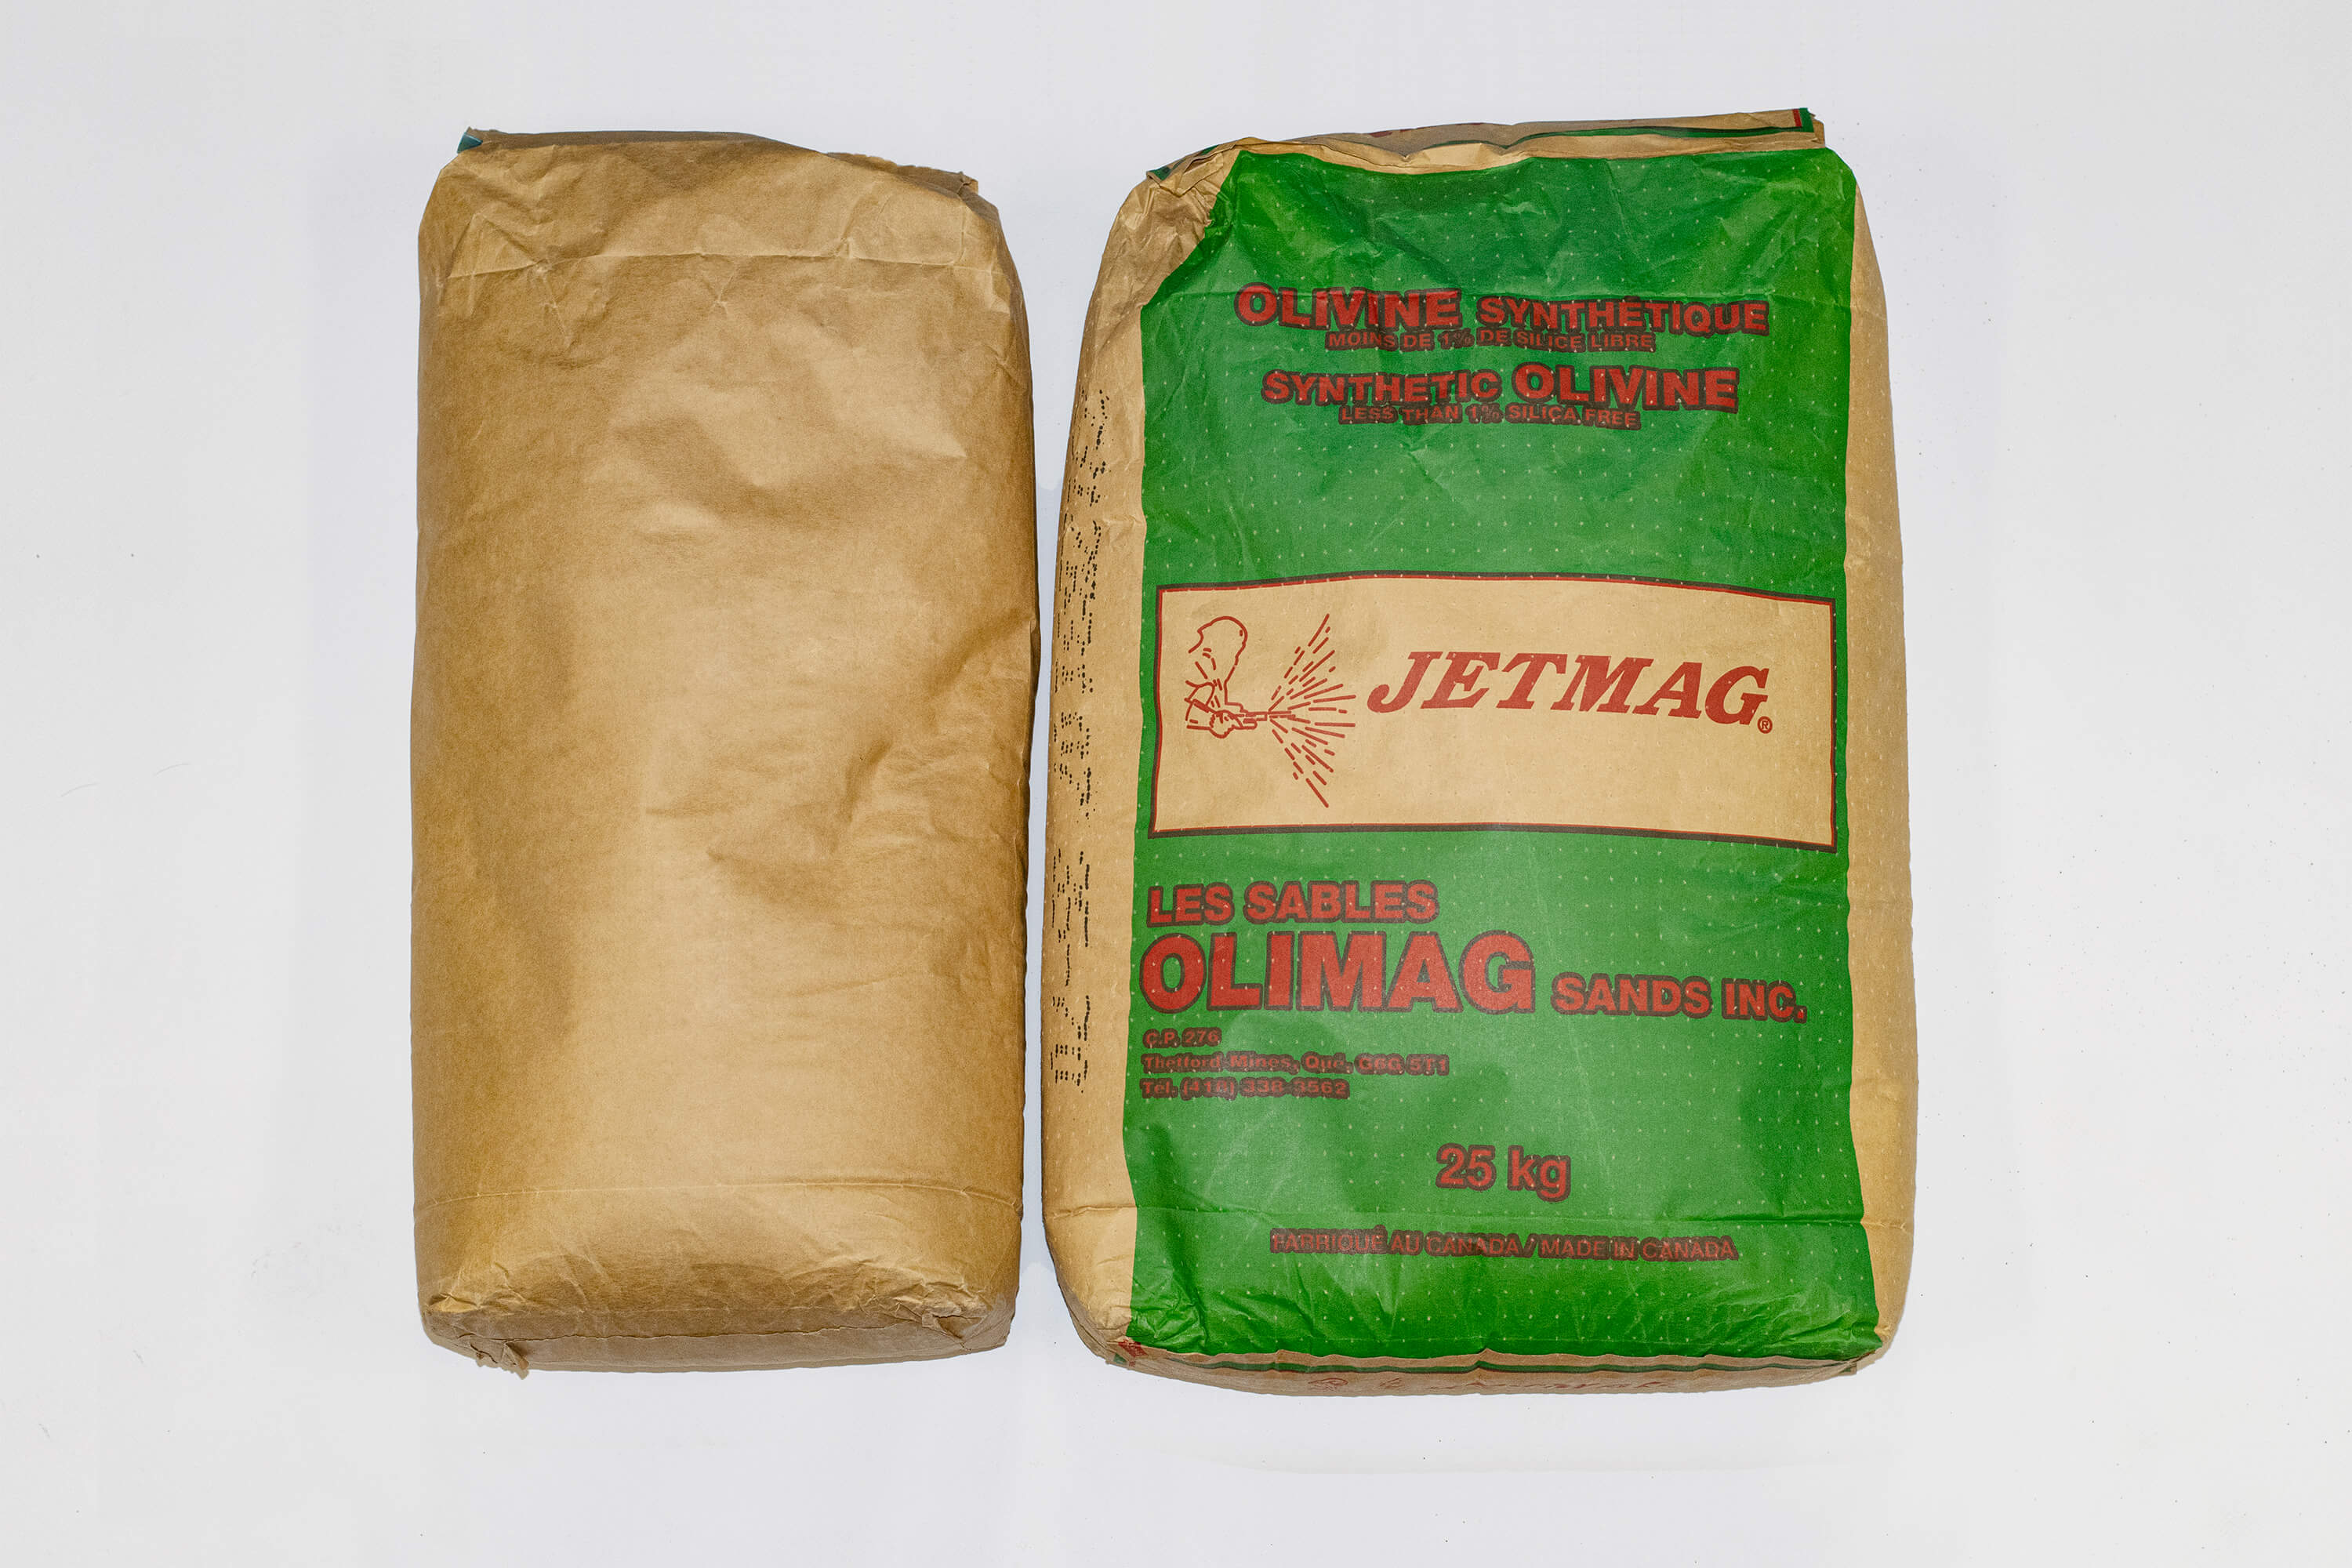 Jetmag synthetic olivine 32B4 grit 55LB bag. 